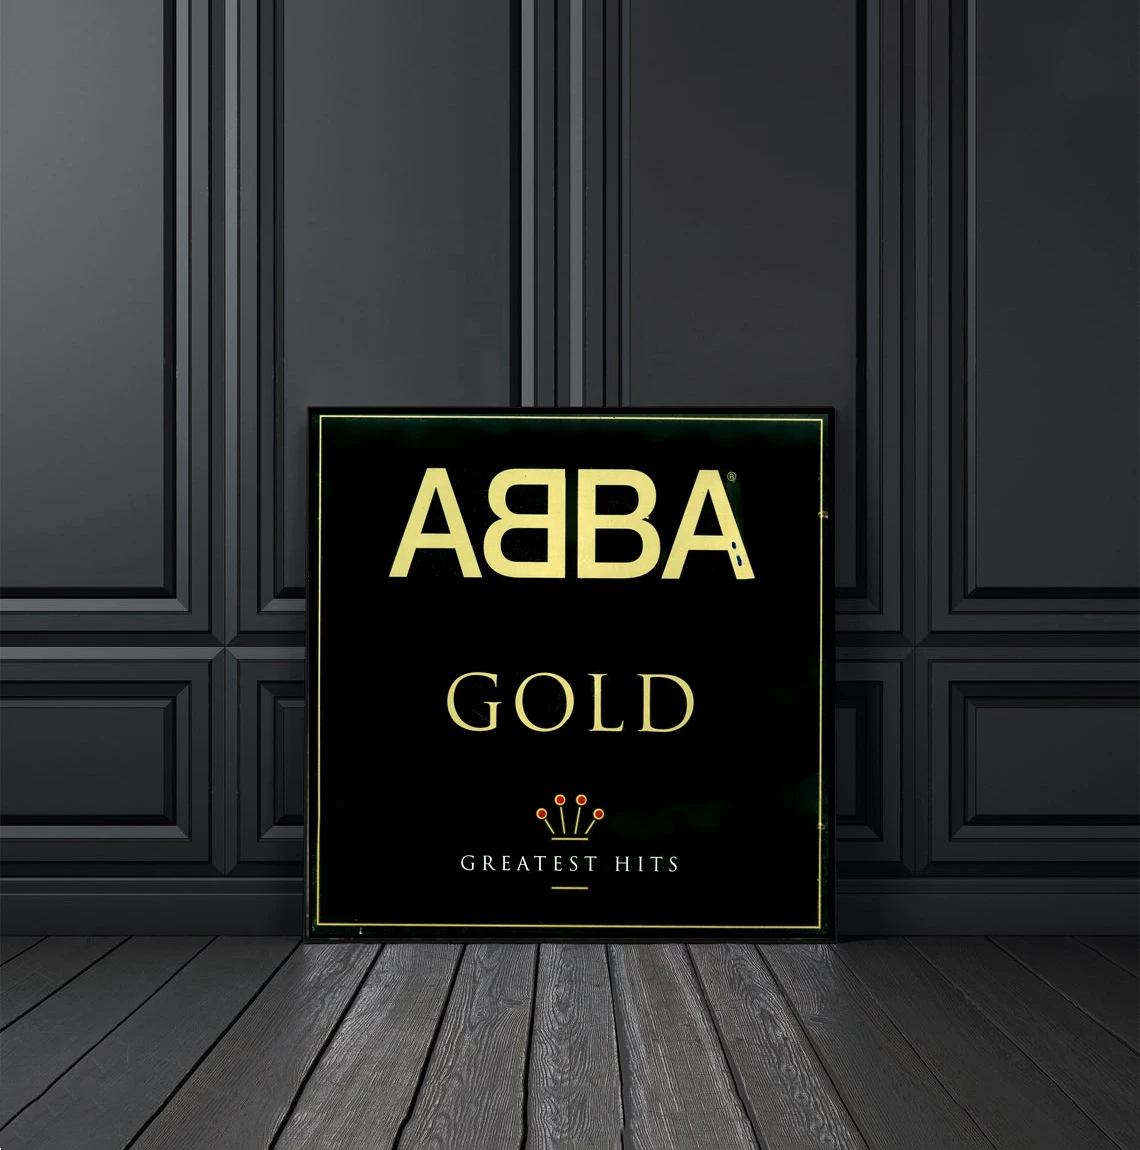 Золотой рэп. ABBA "Gold".